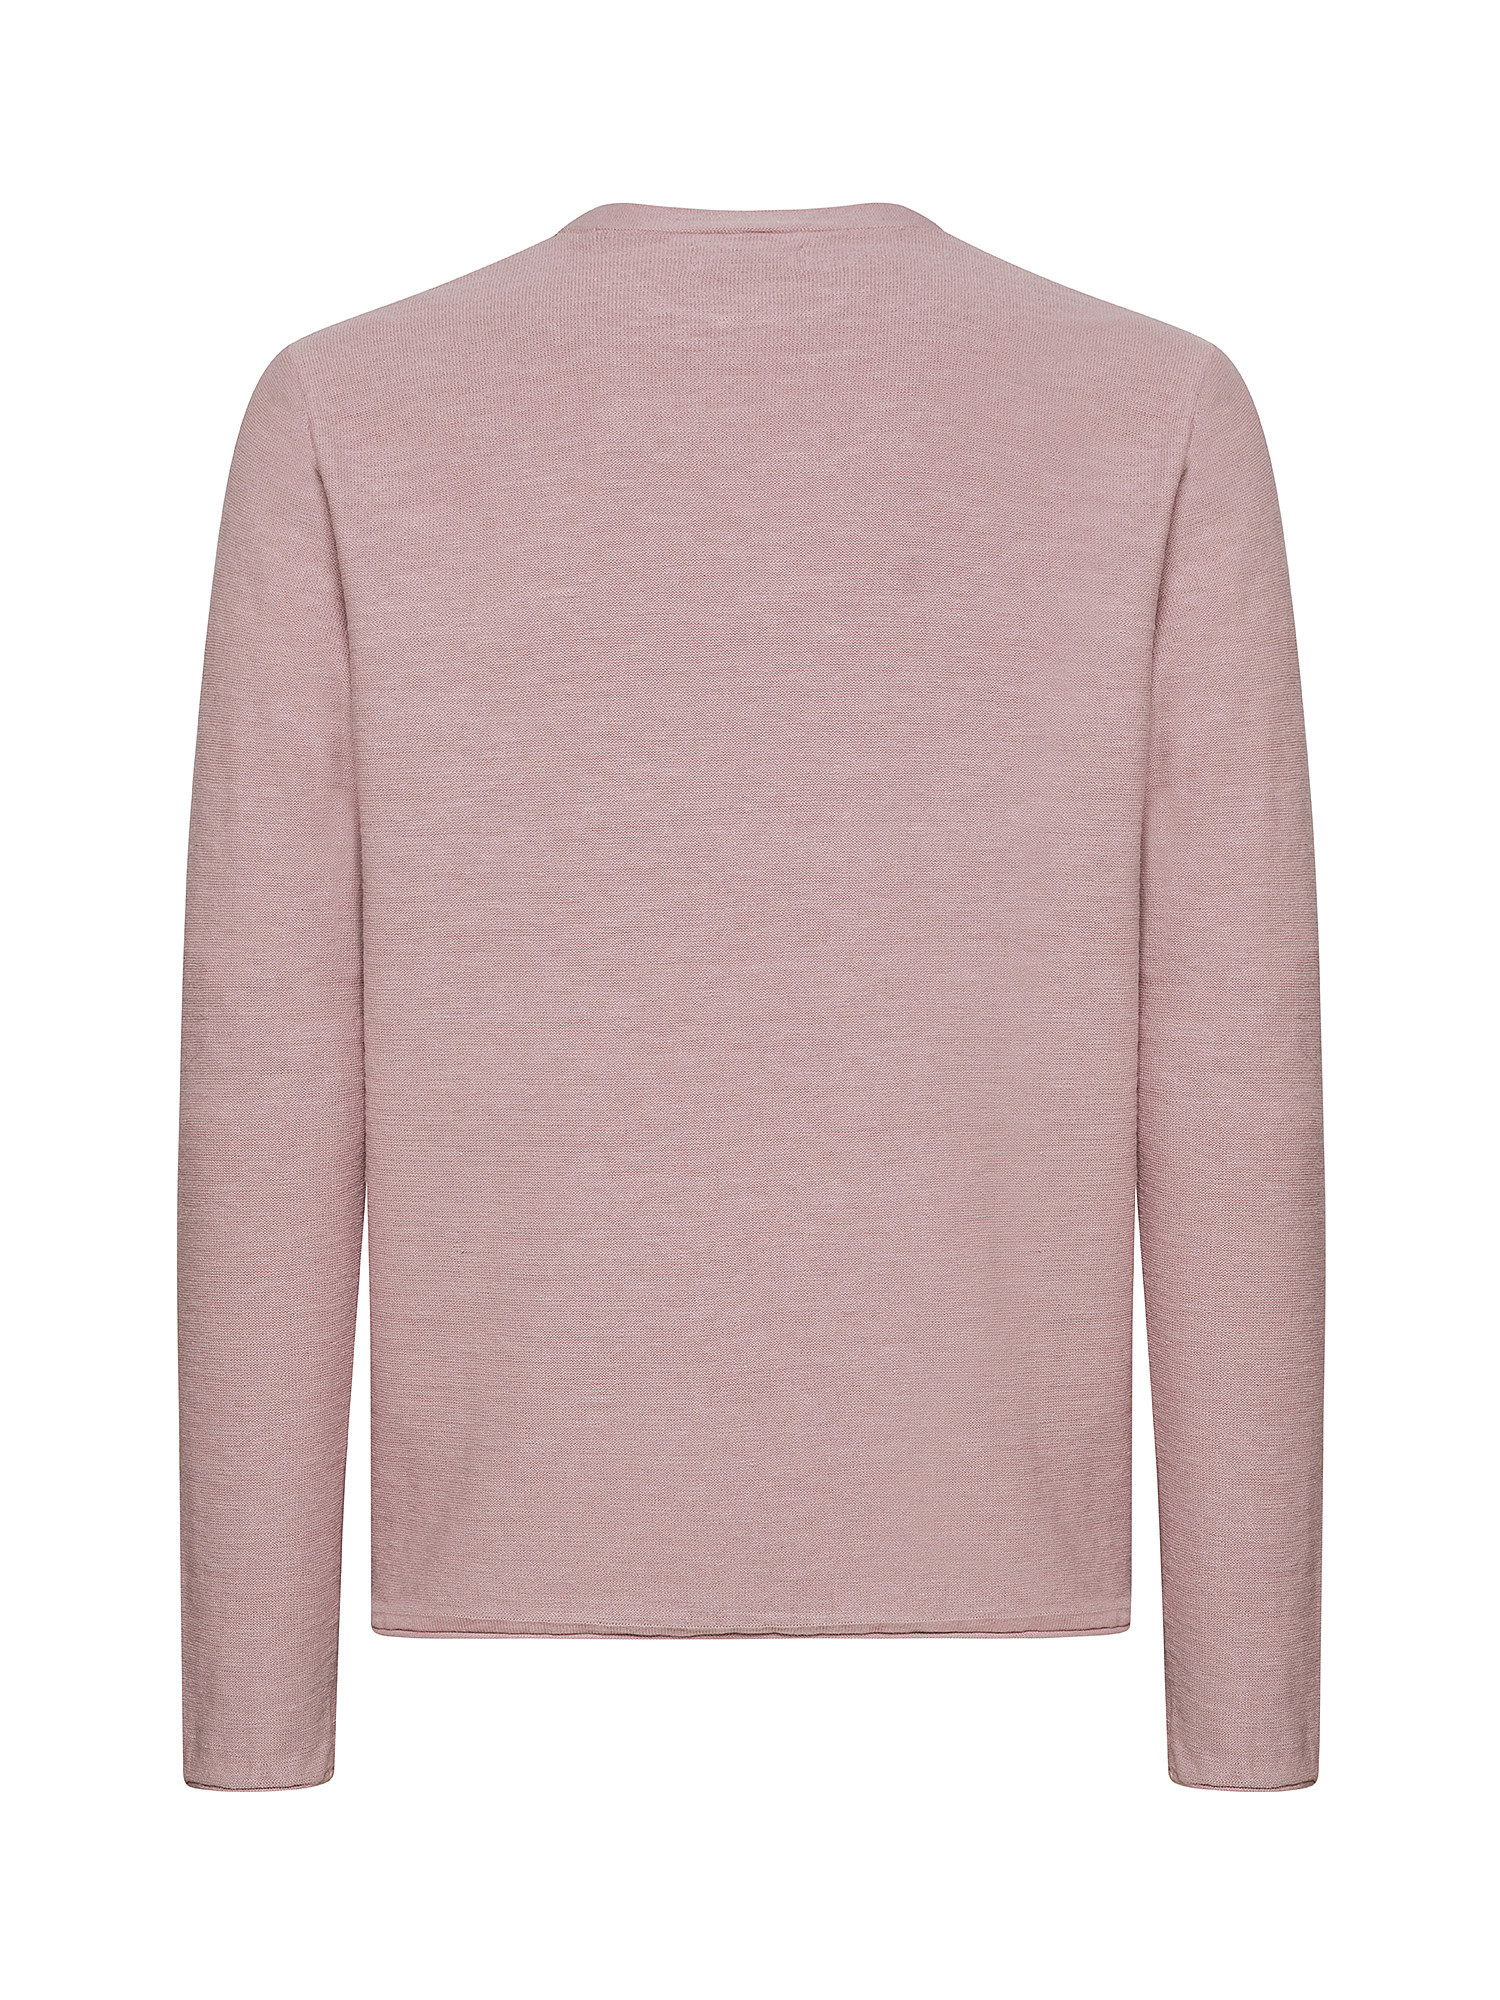 Jack & Jones - Linen blend pullover, Antique Pink, large image number 8